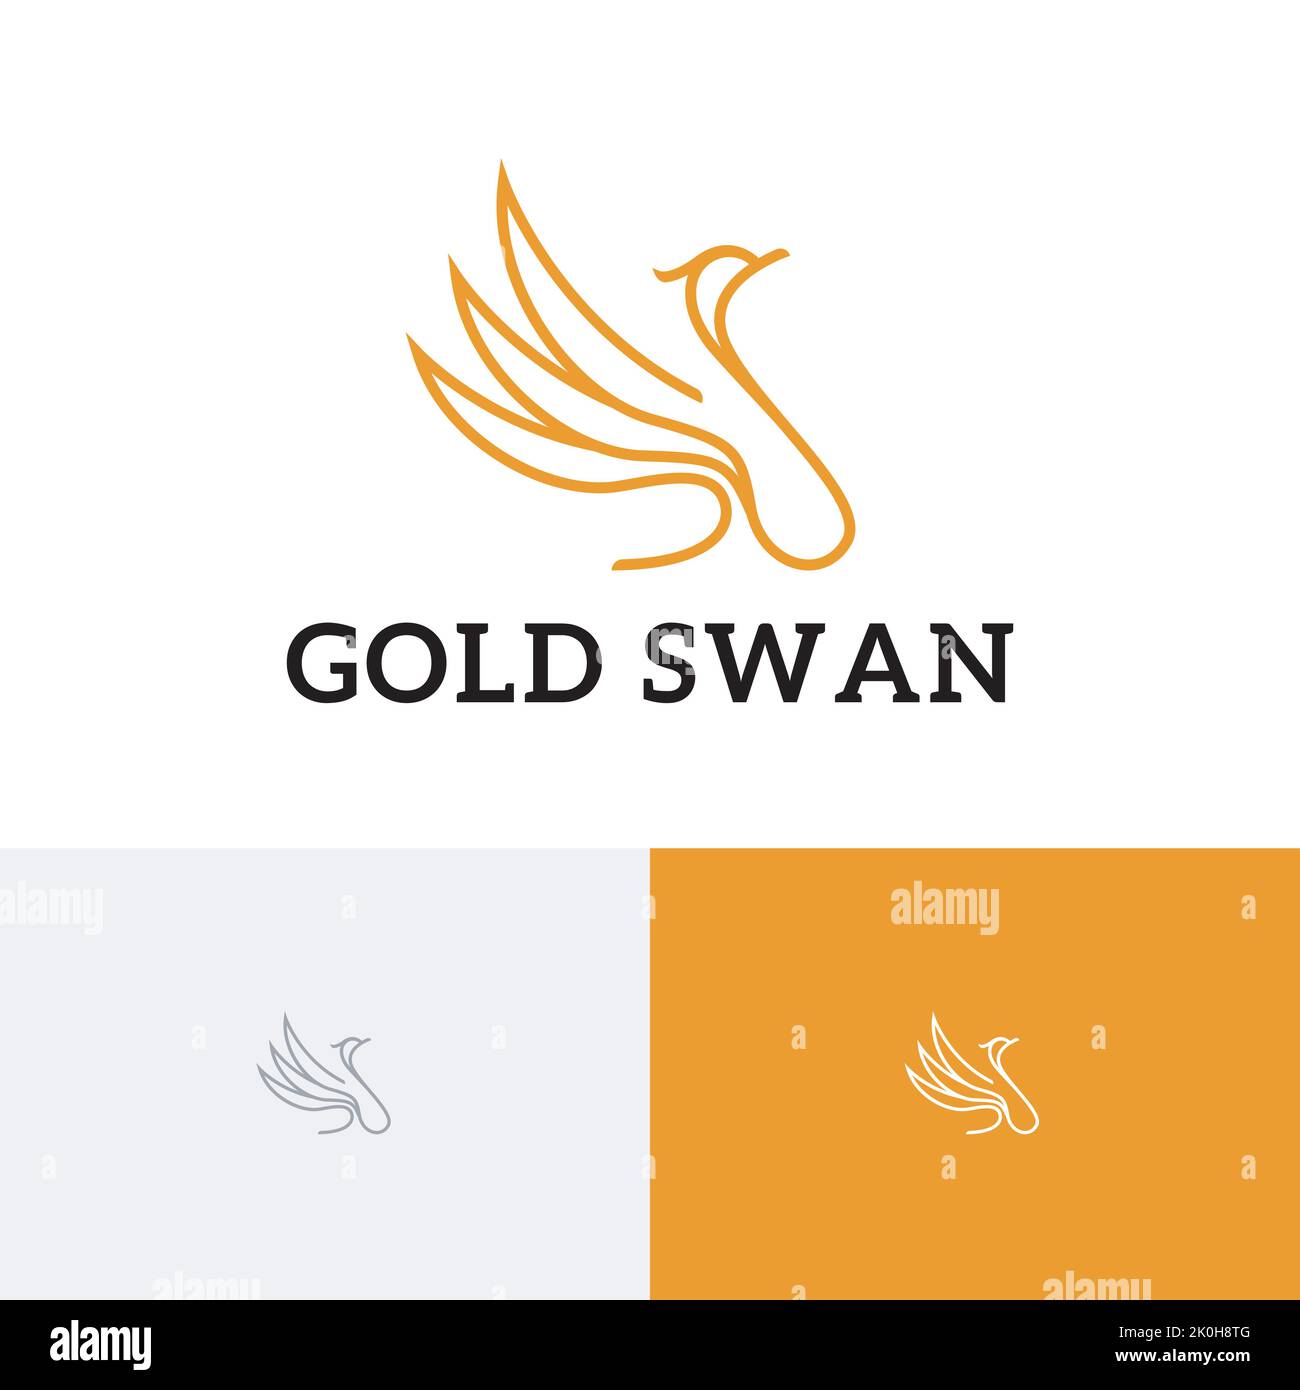 Gold Swan Golden élégant Goose monoline logo Illustration de Vecteur